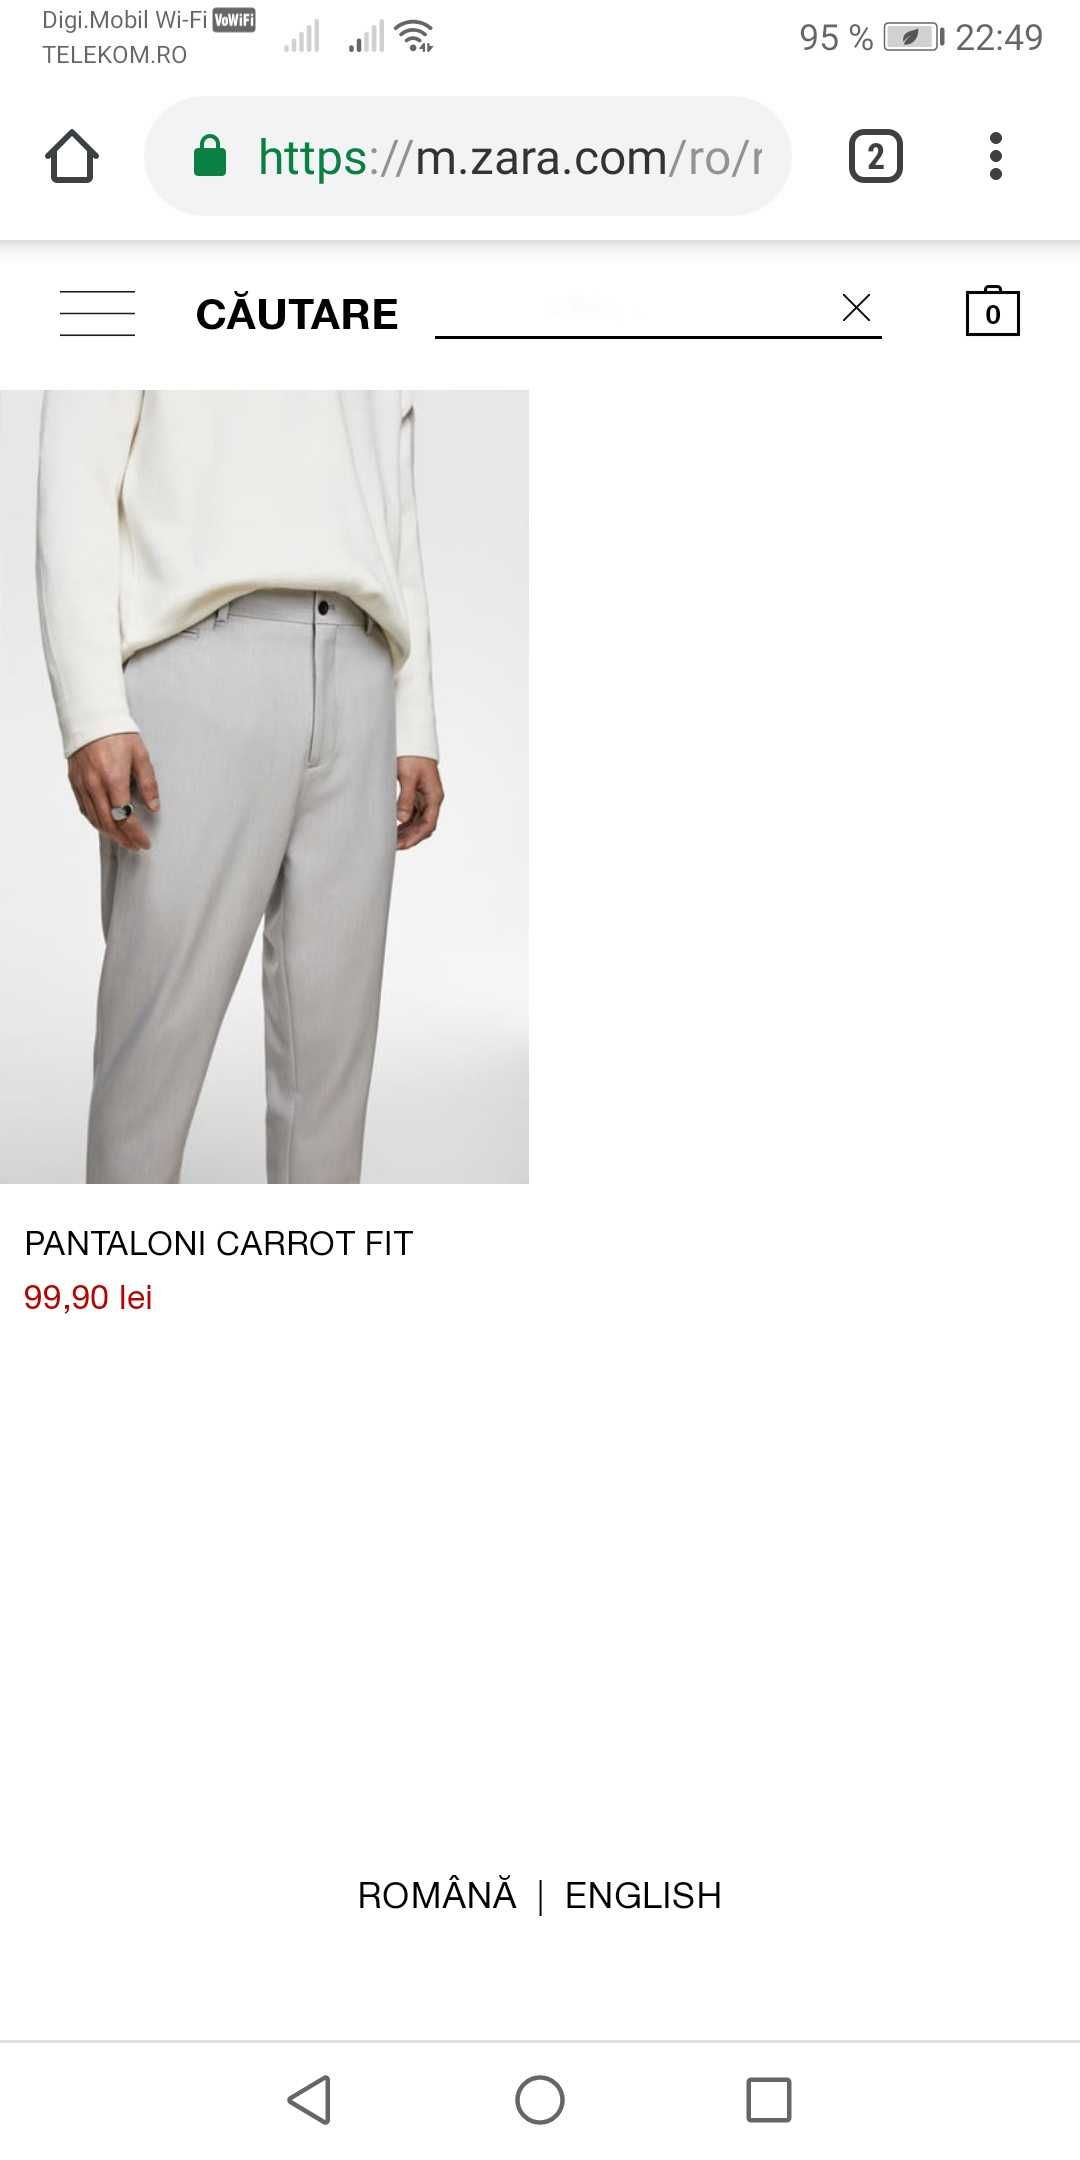 Pantaloni chino barbati Carrot Fit gri M/L/32/42 Zara TransportGratuit